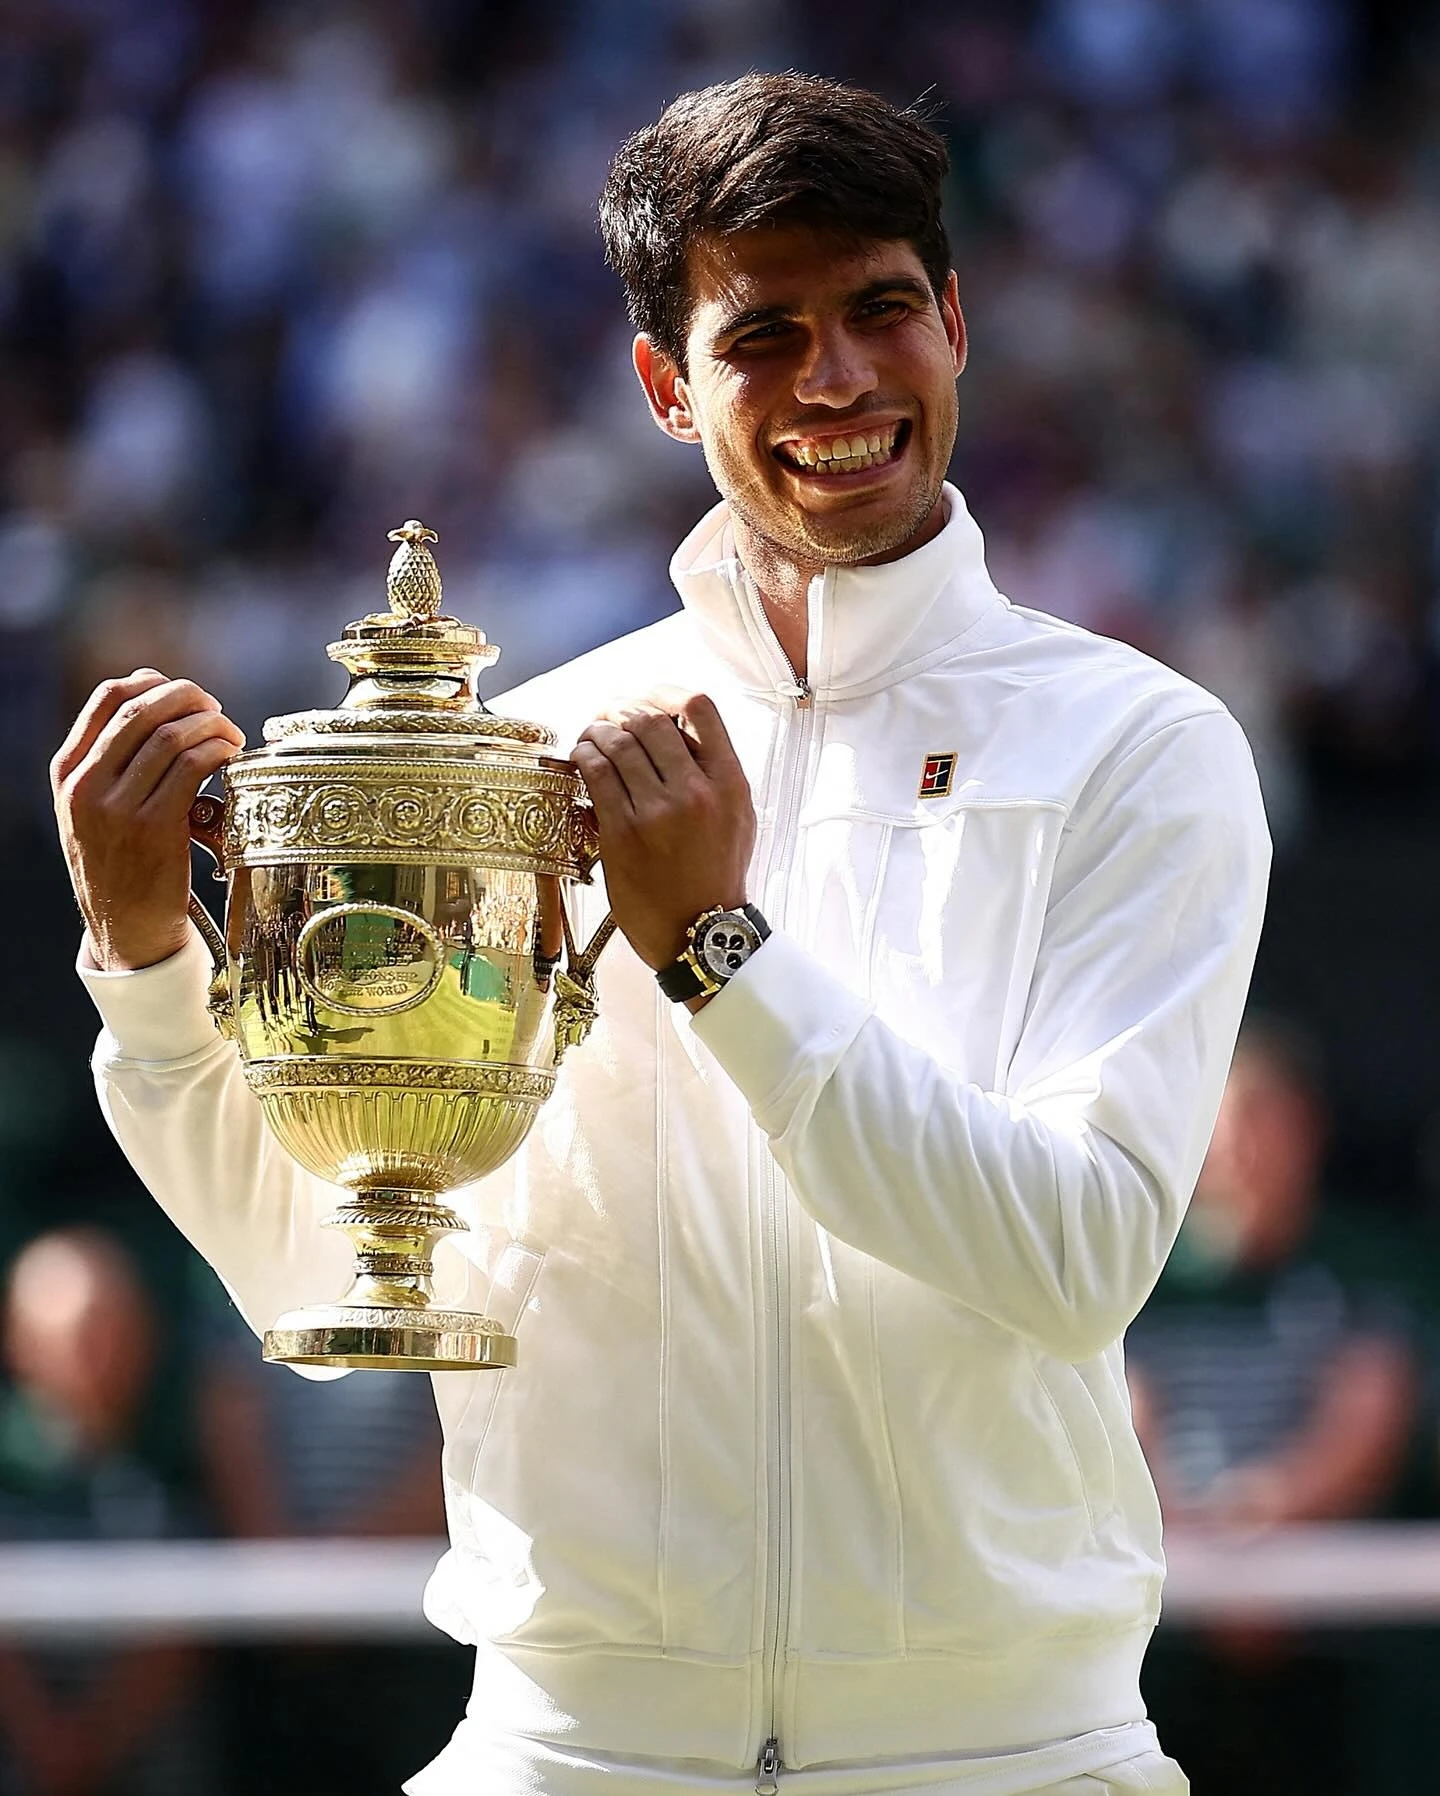 Đồng hồ Rolex trên tay nhà vô địch Wimbledon 21 tuổi